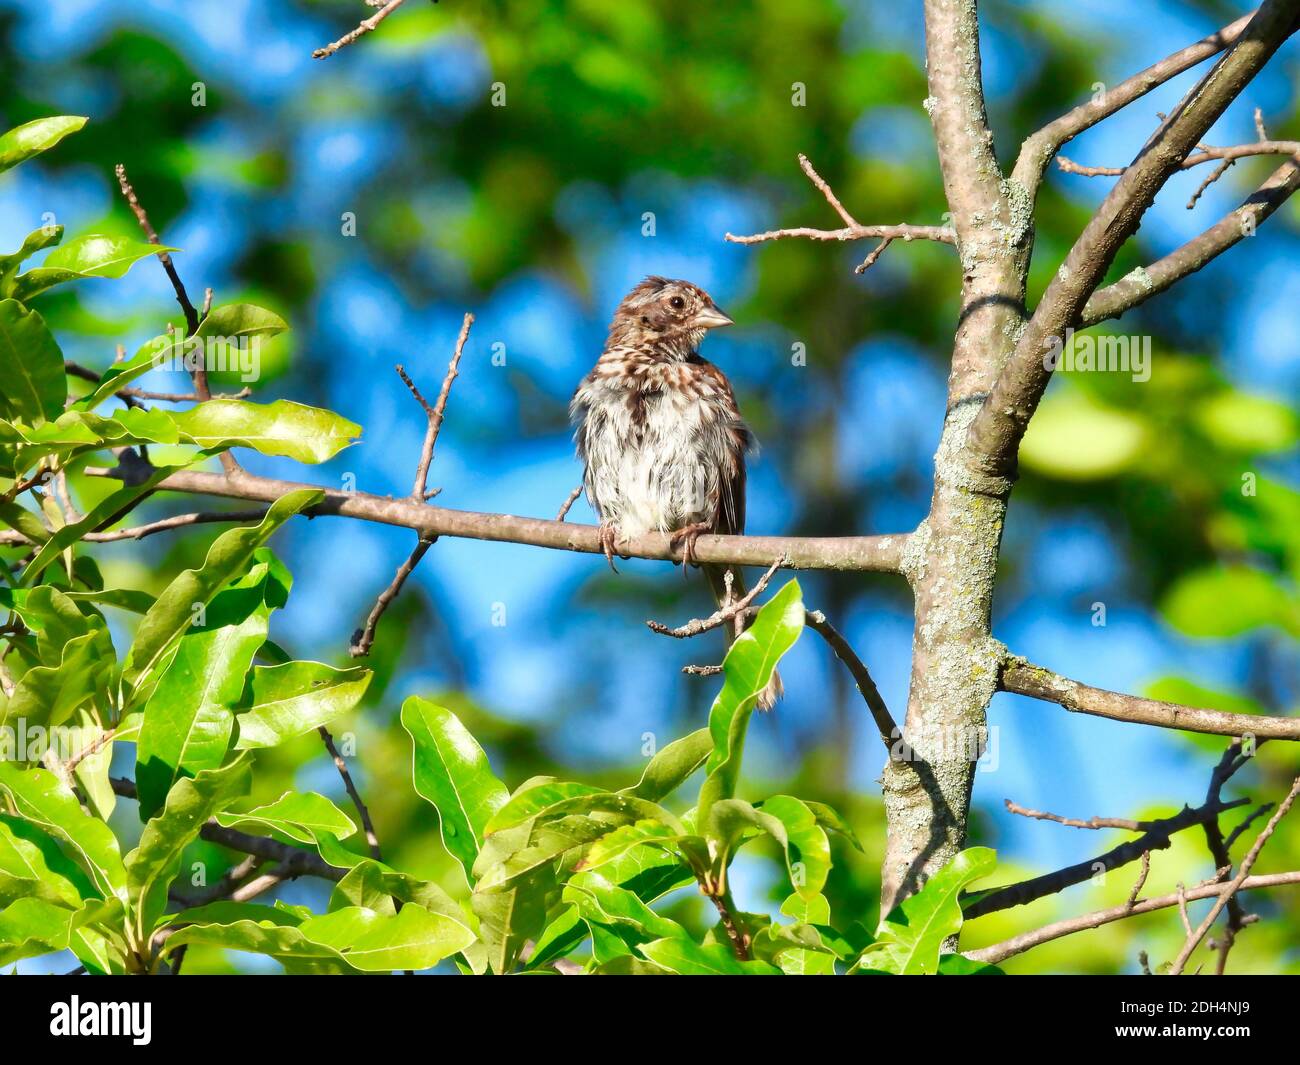 Junger Sperlingsvogel mit wackeligem Hals sitzt auf einem Baum Zweig umgeben von grünen Blättern und blauem Himmel Stockfoto